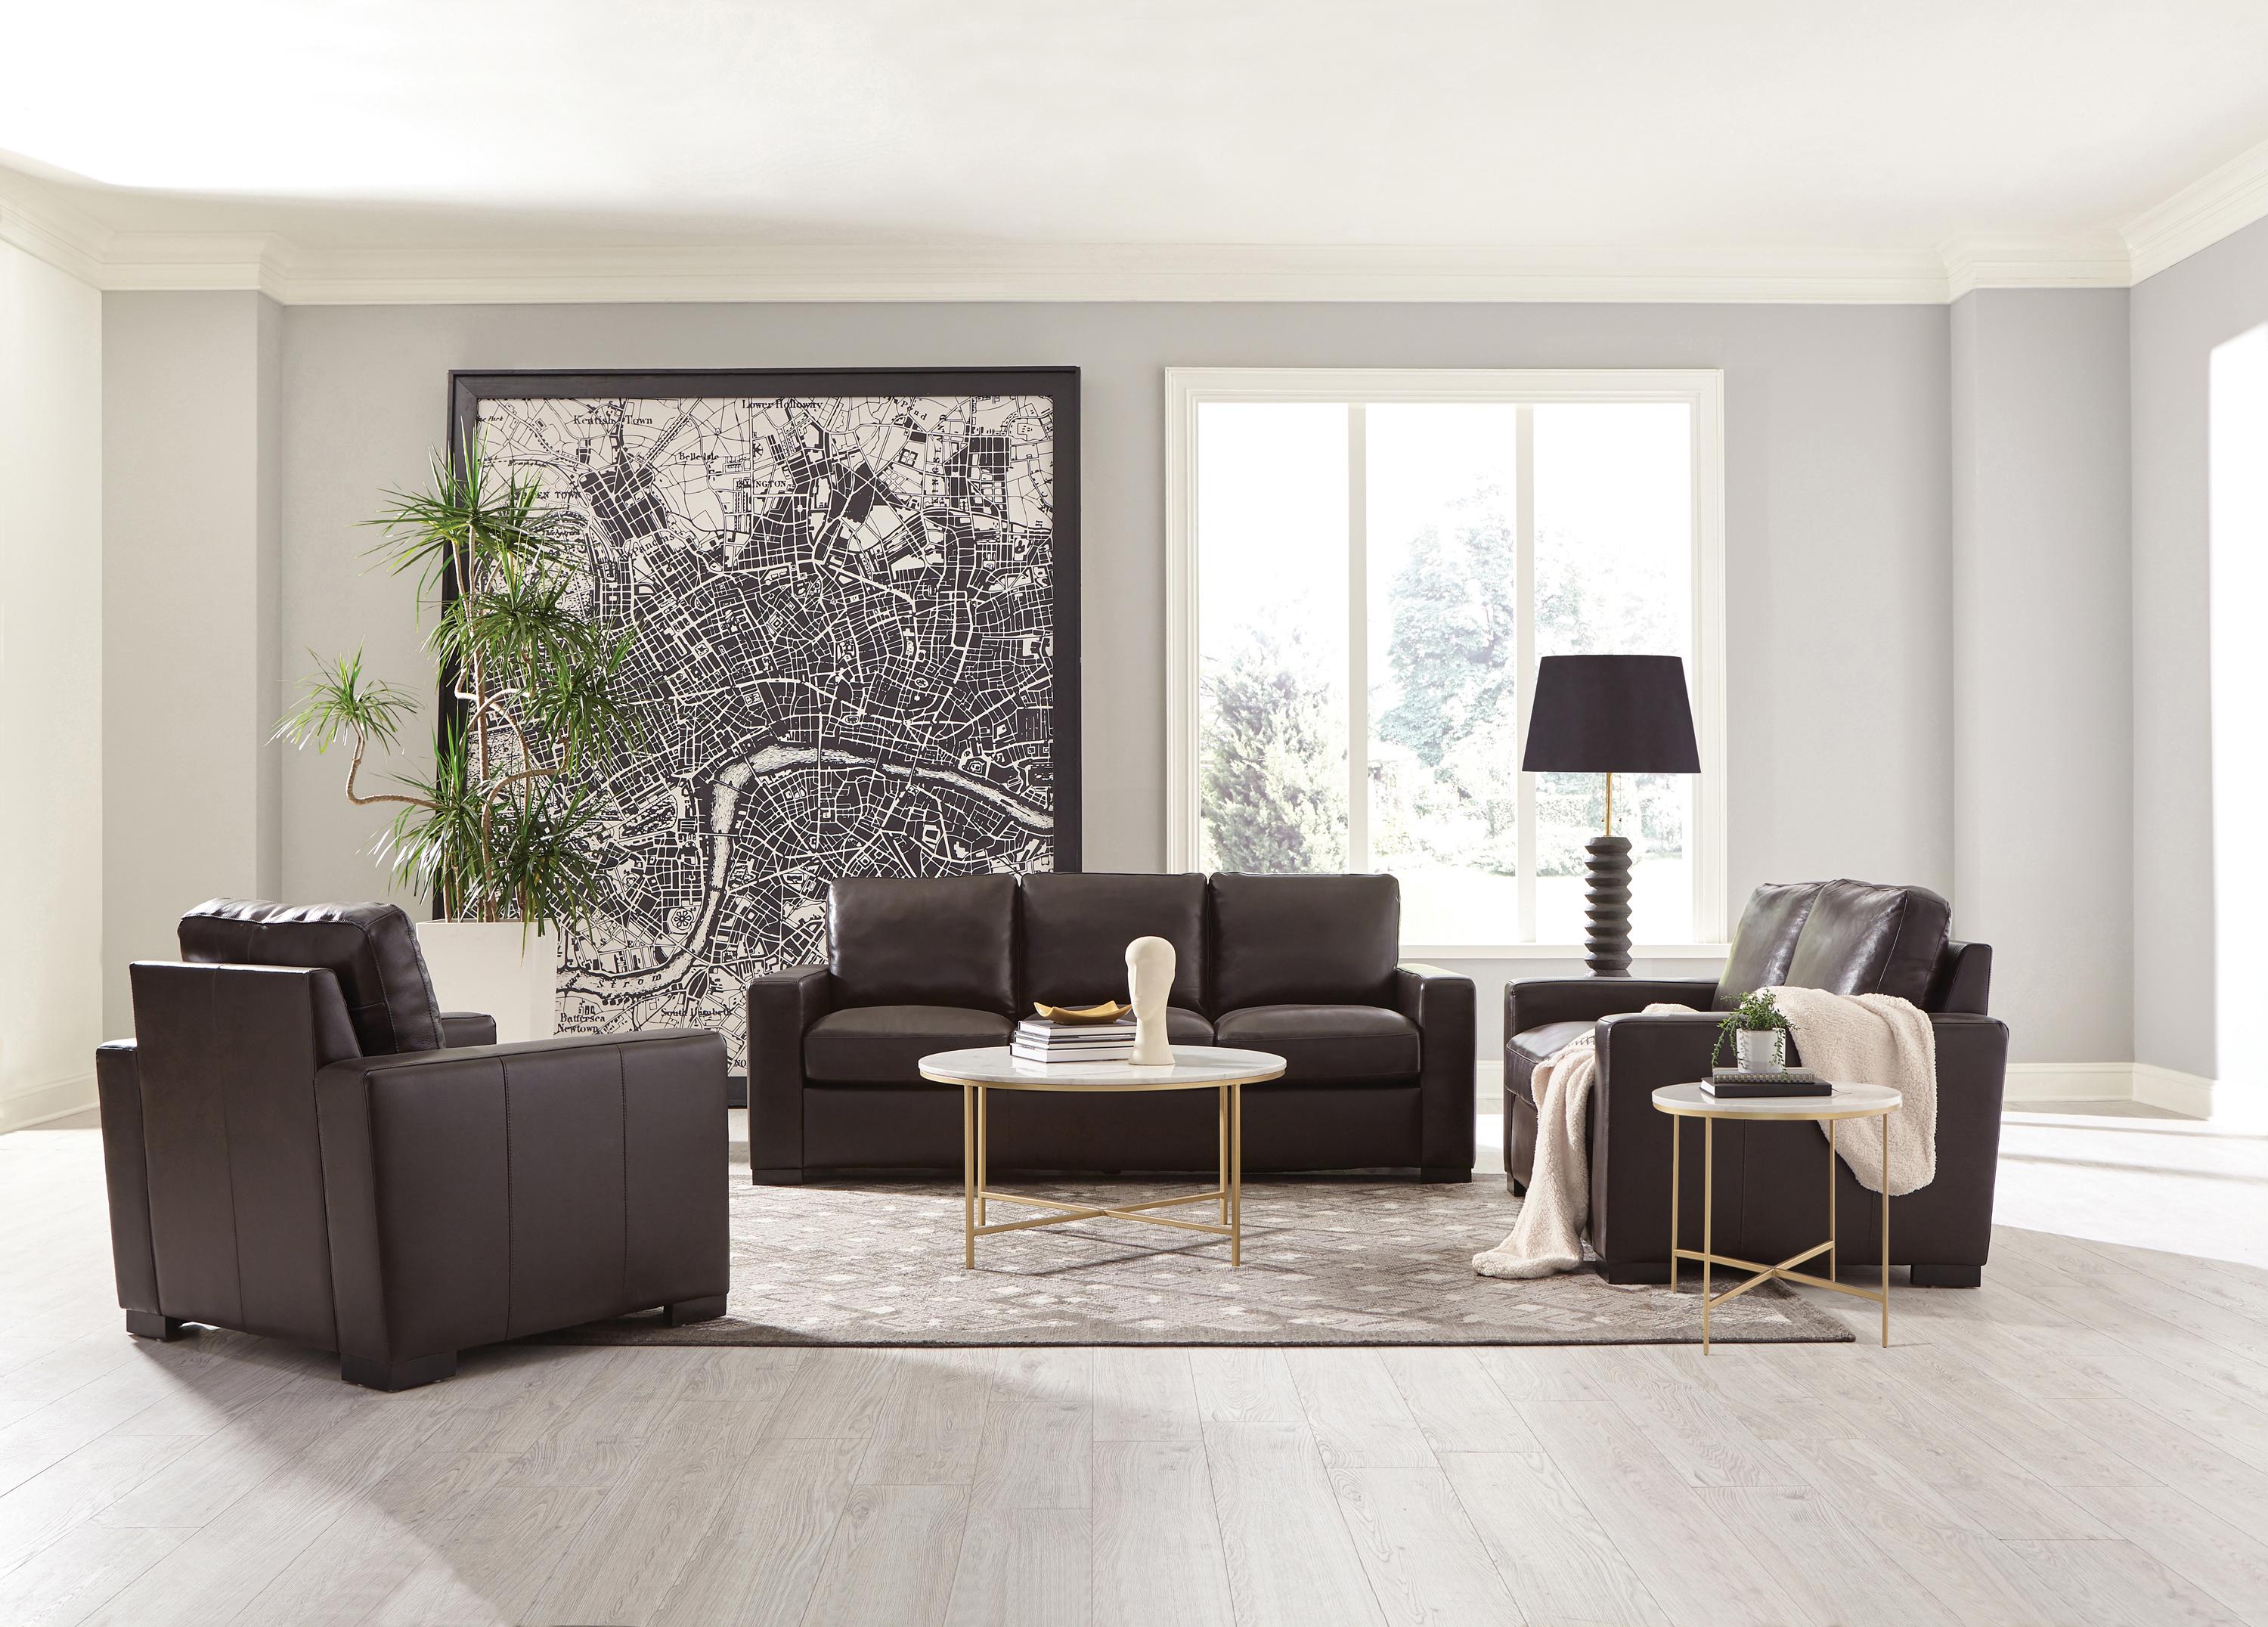 Modern Living Room Set 506801-S2 Boardmead 506801-S2 in Dark Brown Leather